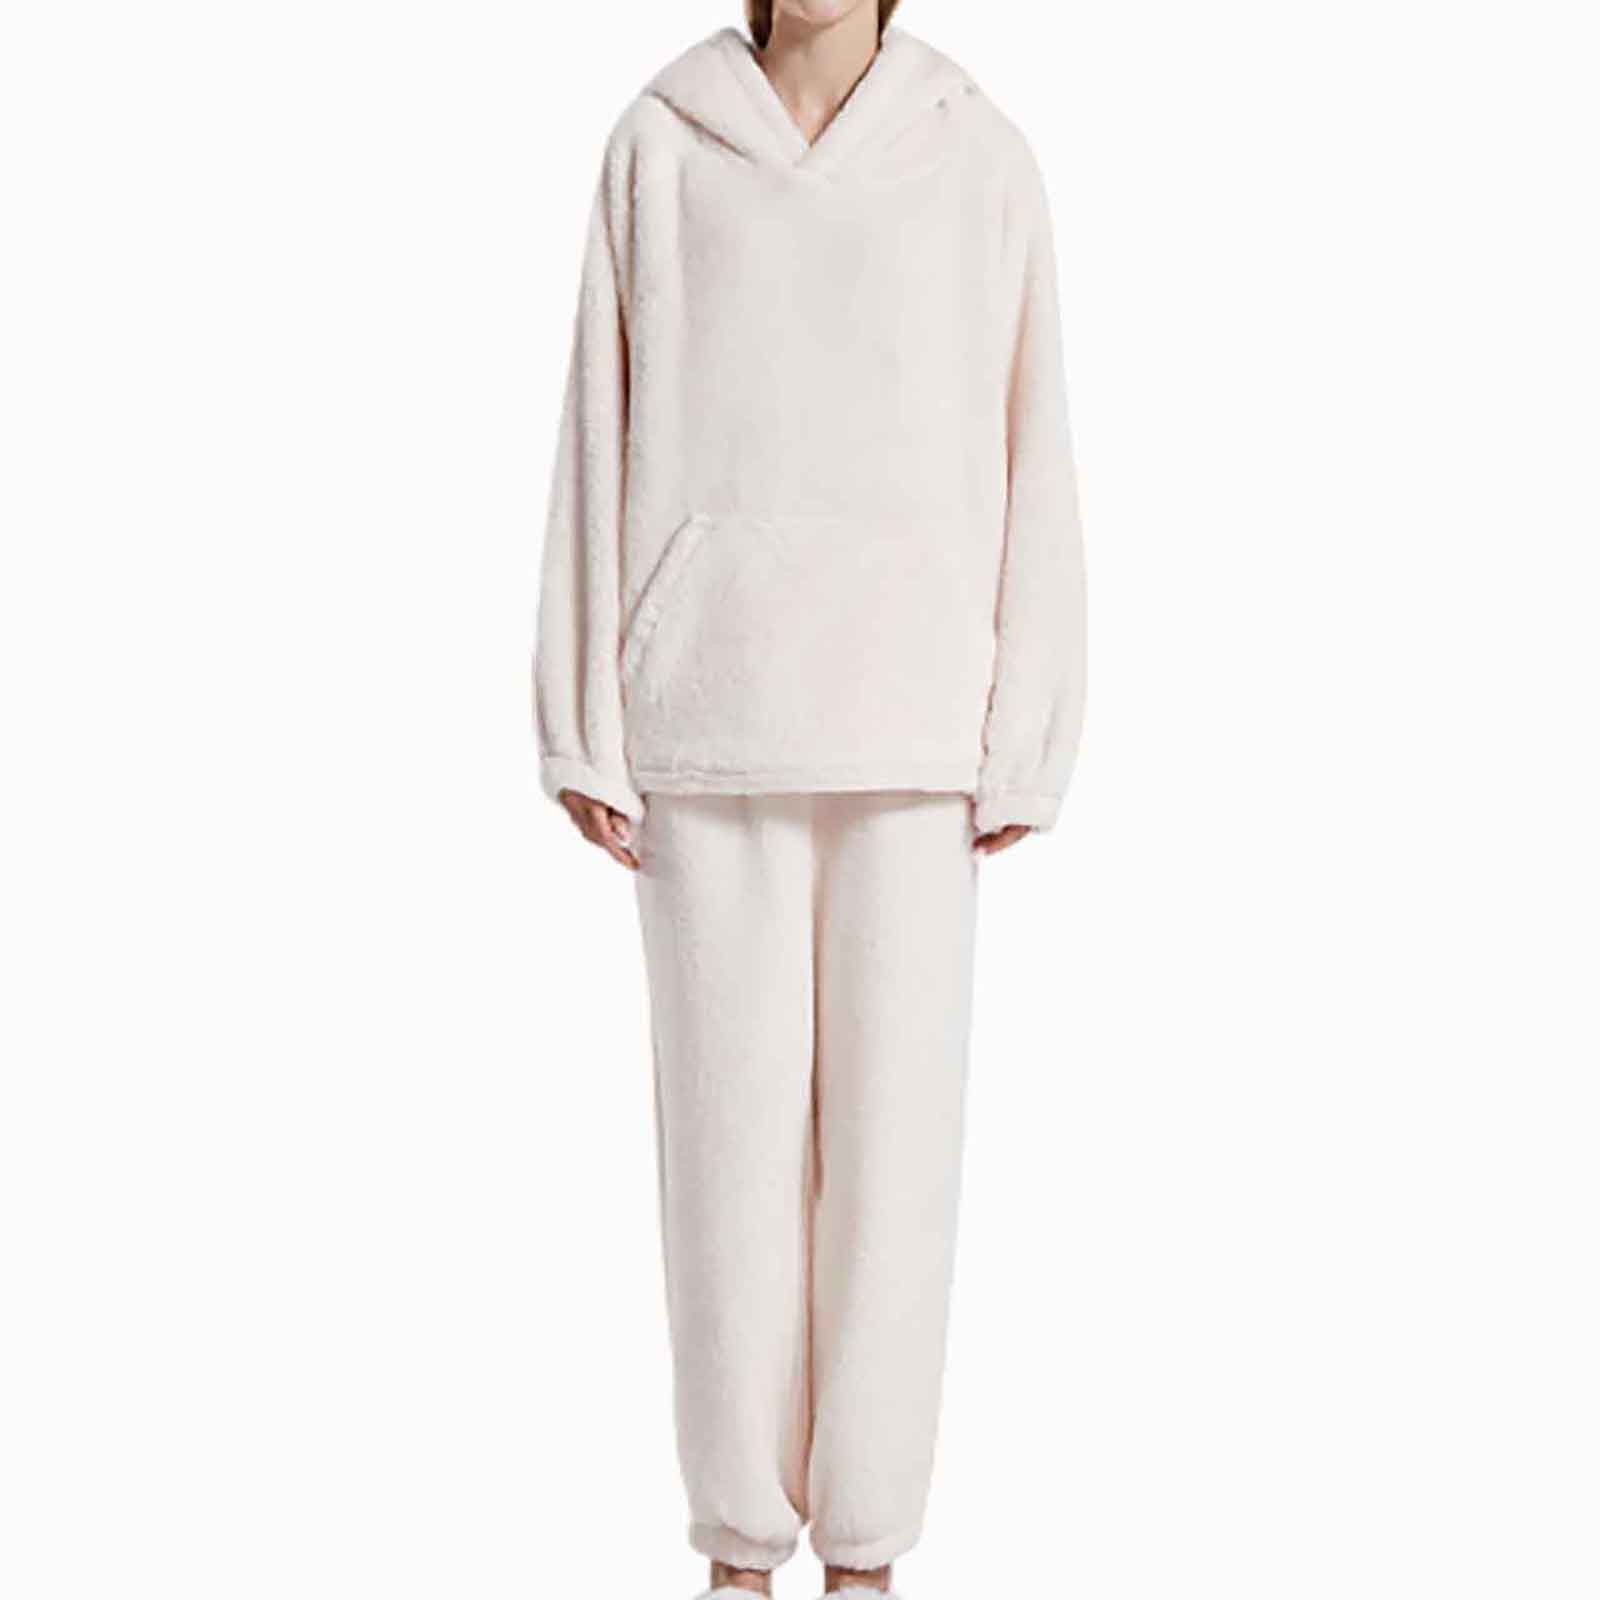 Yievot Fuzzy Pajamas Set for Women Winter Warm Loungewear 2 Piece